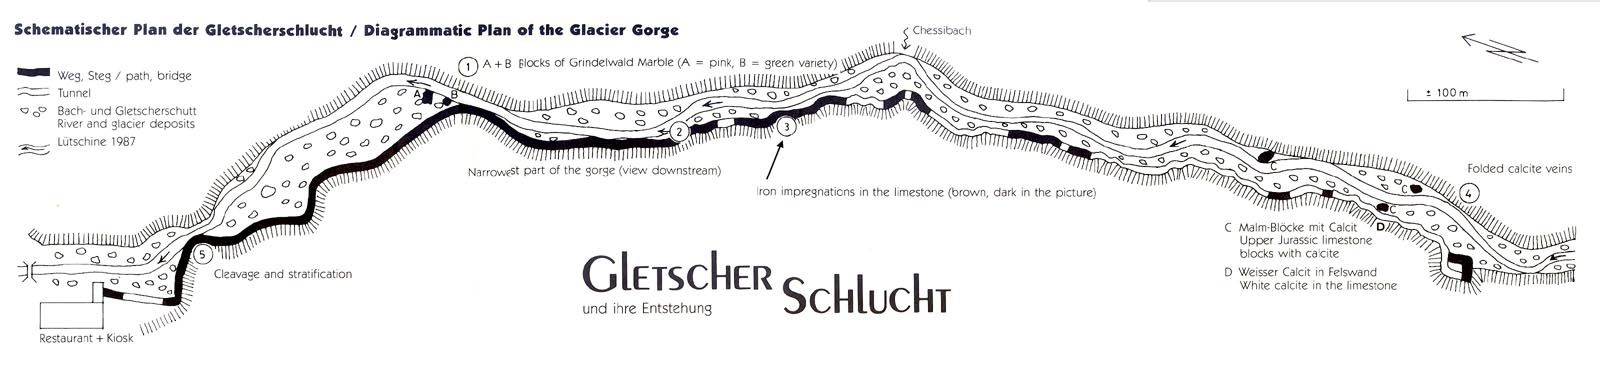 gletscherschlucht-map